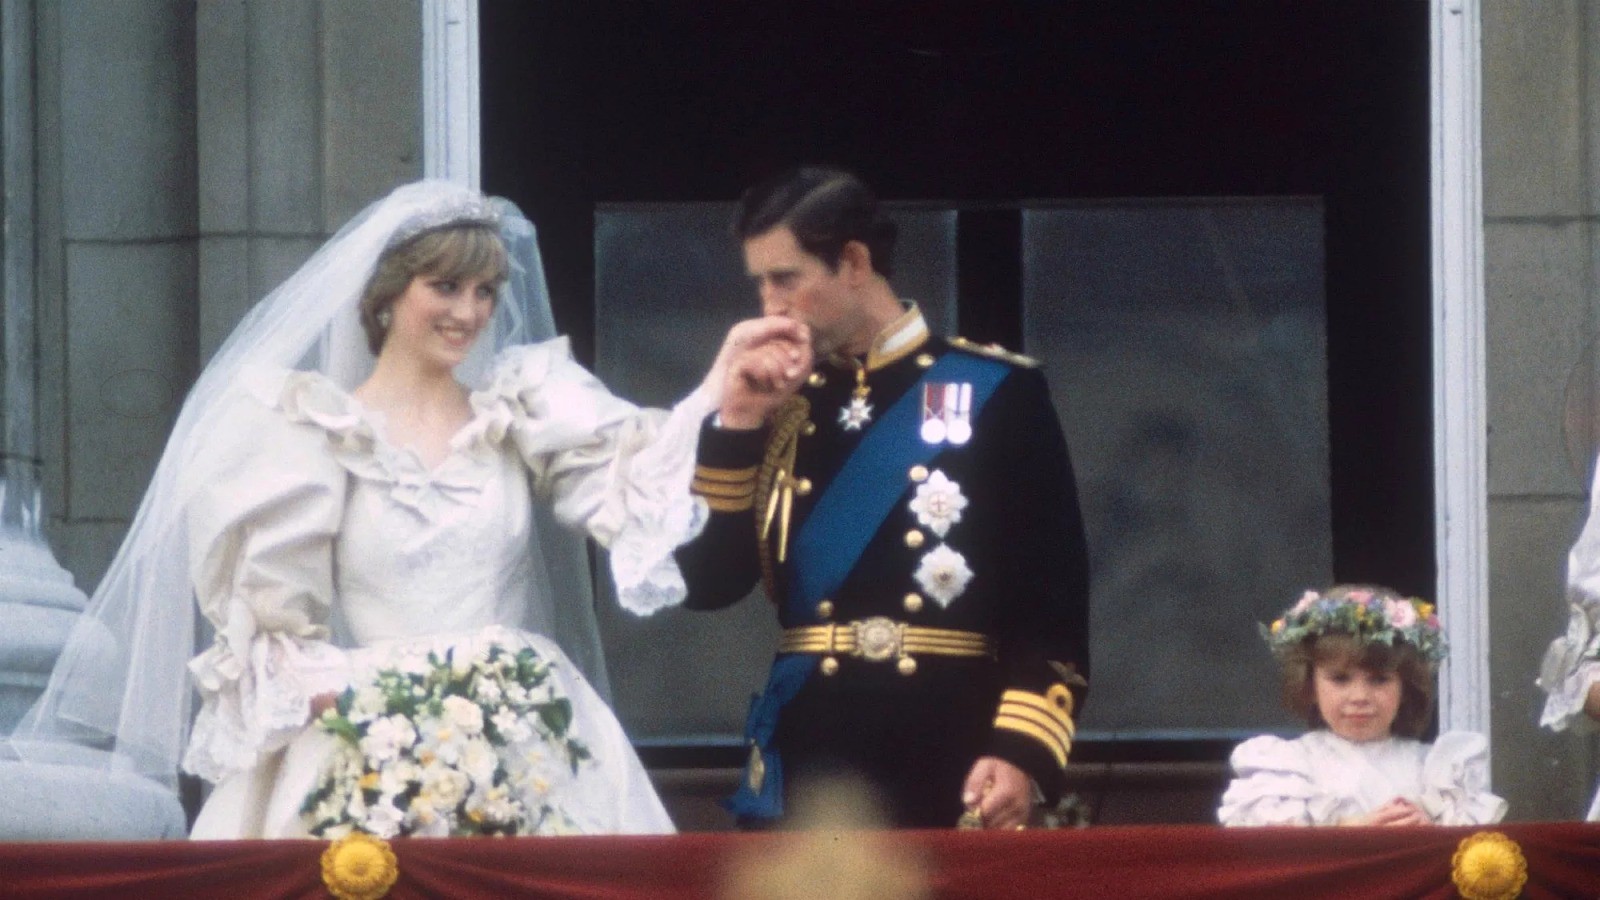 Đám cưới Hoàng gia tưởng chừng hoàn hảo tuyệt đối vẫn xảy ra không ít sự cố “dở khóc dở cười” đi vào lịch sử - Ảnh 3.